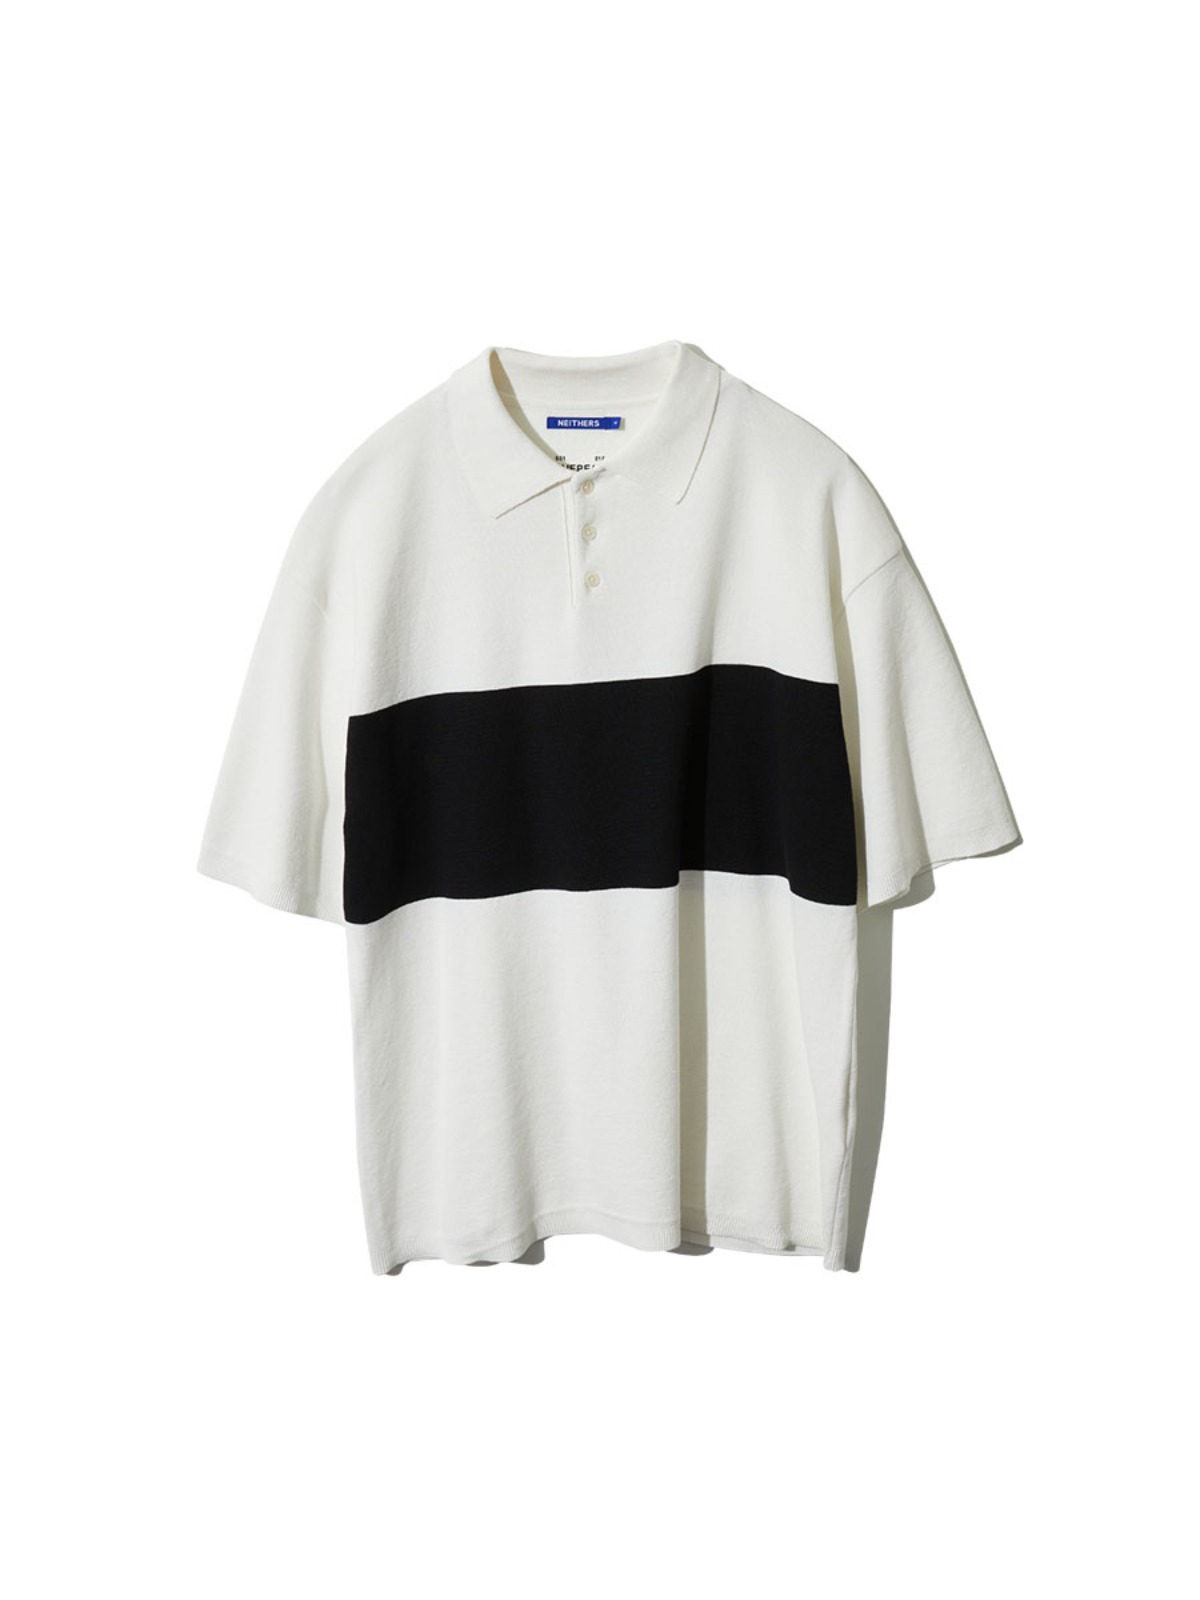 Club Half Knit Shirt (White/Black)